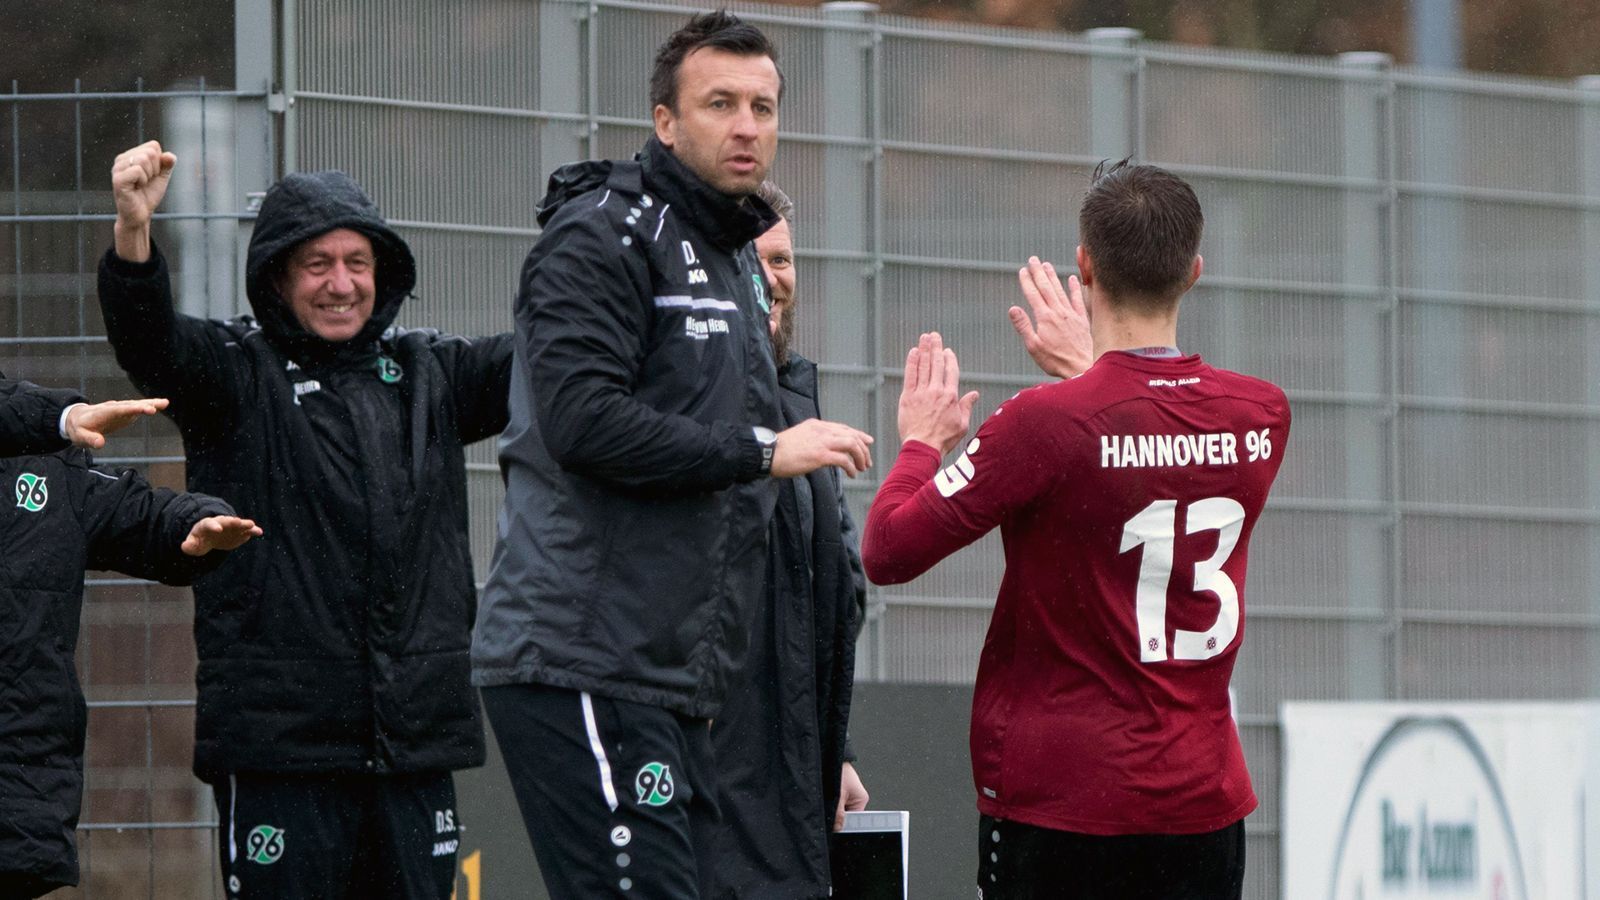 
                <strong>Hannover 96 (Regionalliga Nord)</strong><br>
                Unter Trainer Christoph Dabrowski machte Hannover 96 II in der abgelaufenen Saison der Regionalliga Nord einen weiteren, kleinen Schritt nach oben. Der Ex-Profi beendete die Spielzeit mit seinem Team auf Platz 6 (im Vorjahr Platz 8). So kann die Hannoveraner Zweitvertretung trotz des Abstiegs der Profis einigermaßen sorgenfrei in die neue Saison gehen. Mit Stürmer Hendrik Weydandt ist sogar ein für die Regionalliga geholter Stürmer zu einer der wenigen positiven Erscheinungen beim Bundesliga-Absteiger avanciert (sechs Tore in 28 Bundesligaspielen) und hat deshalb auch schon längst einen Profivertrag in der Tasche. Für die Regionalliga-Amateure spielte der 23-Jährige lediglich zwei Mal (ein Tor), ehe der Aufstieg zu den Profis gelang.
              